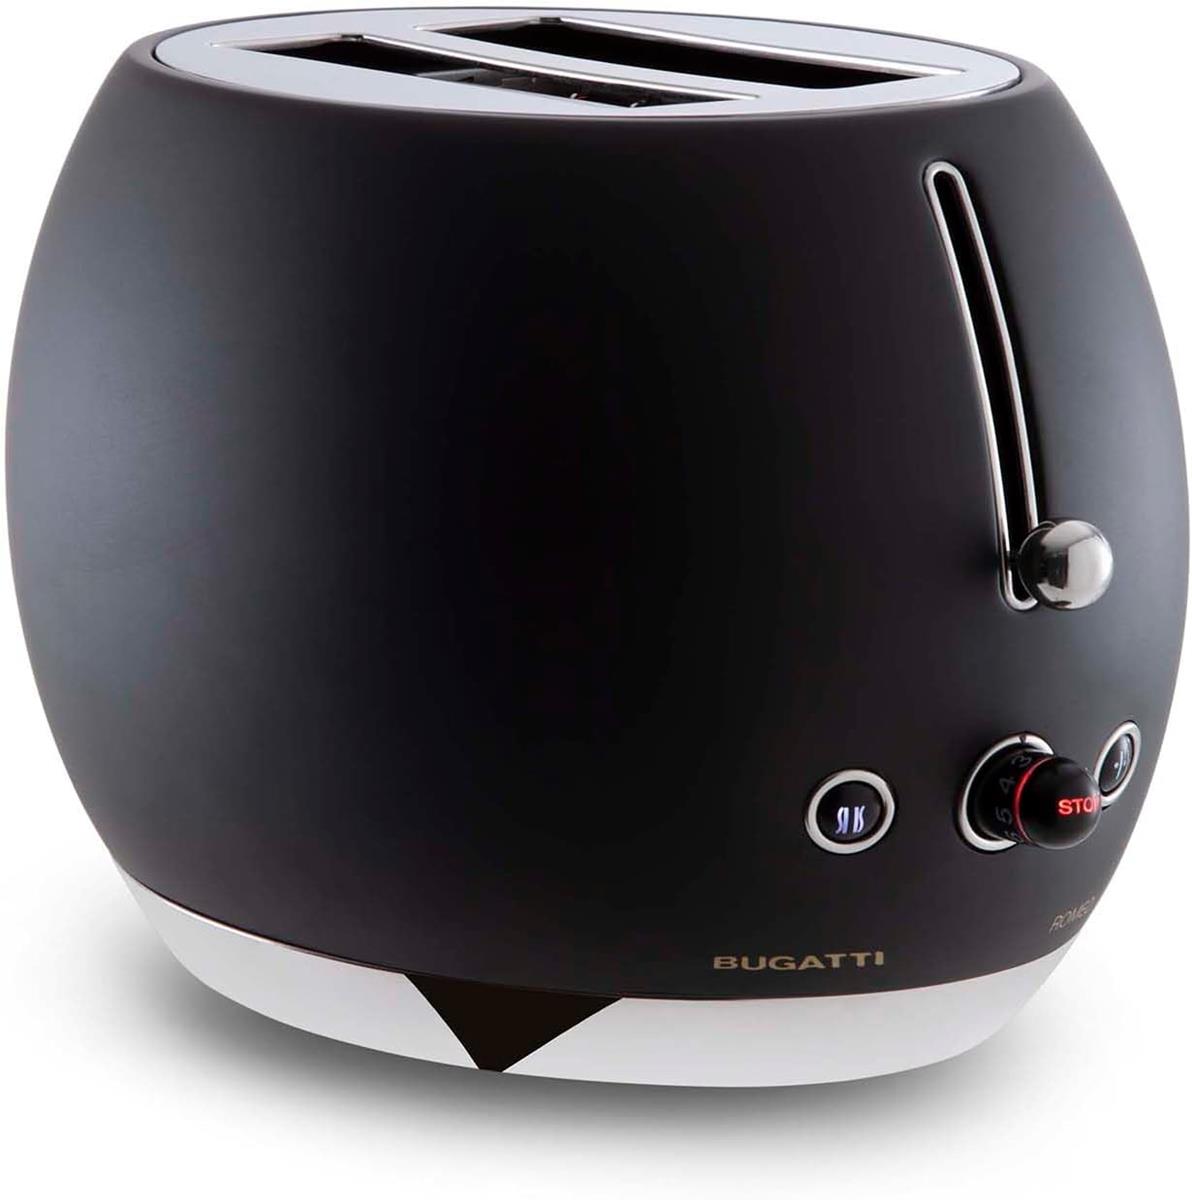 BUGATTI-Romeo-Toaster, 7 níveis de torrar, 4 funções-Pinças não incluídas-870-1035W-Preto fosco